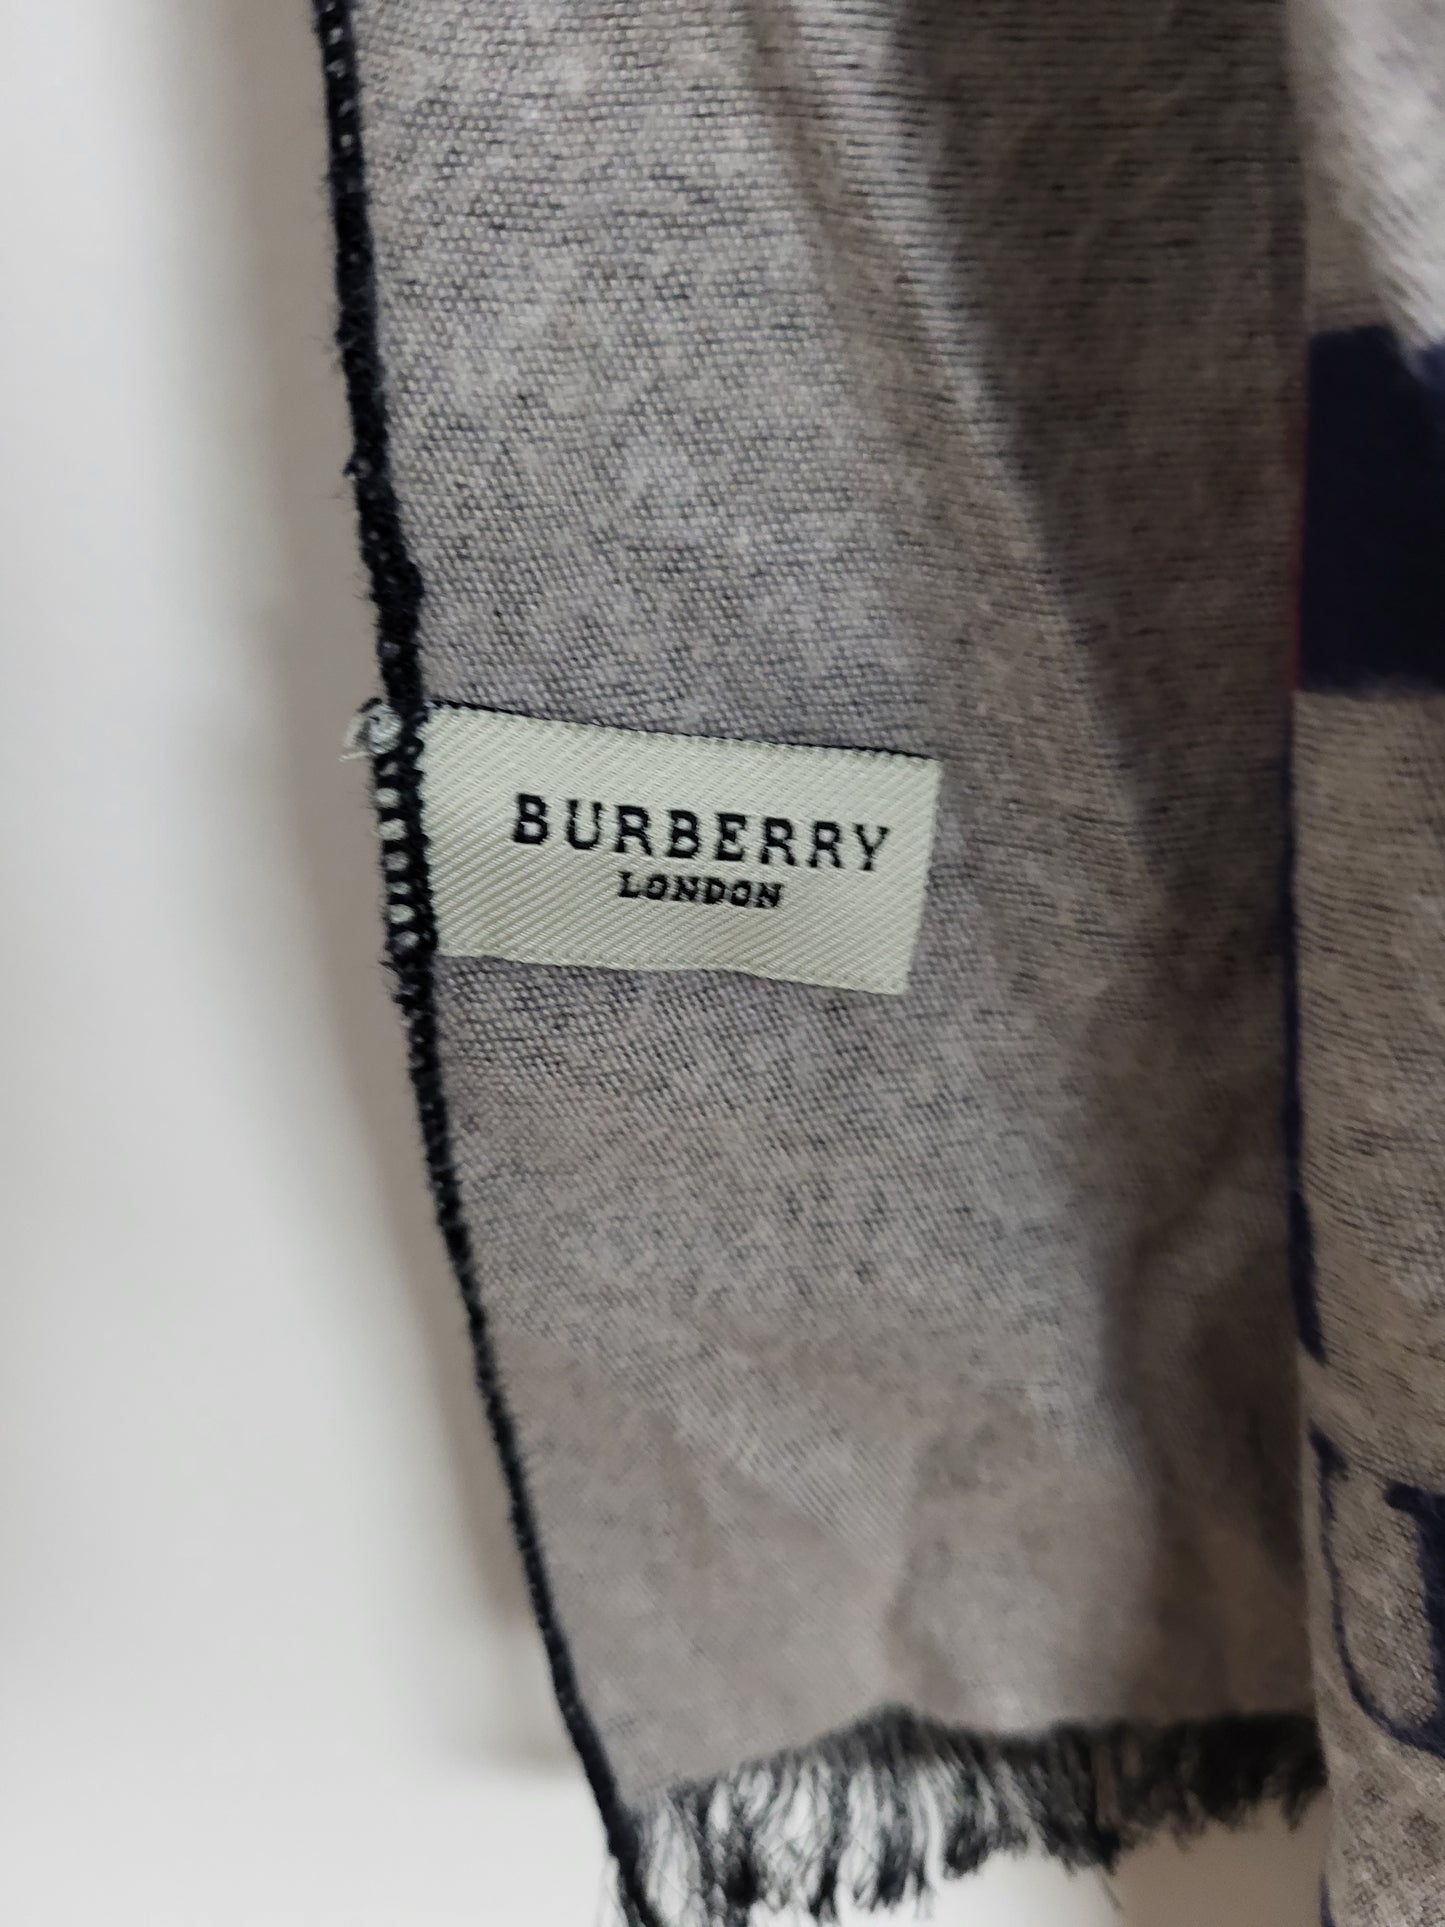 Burberry London - Schal / Tuch - Dunkelblau Tartan - Kaschmir / Seide - 185 x 60